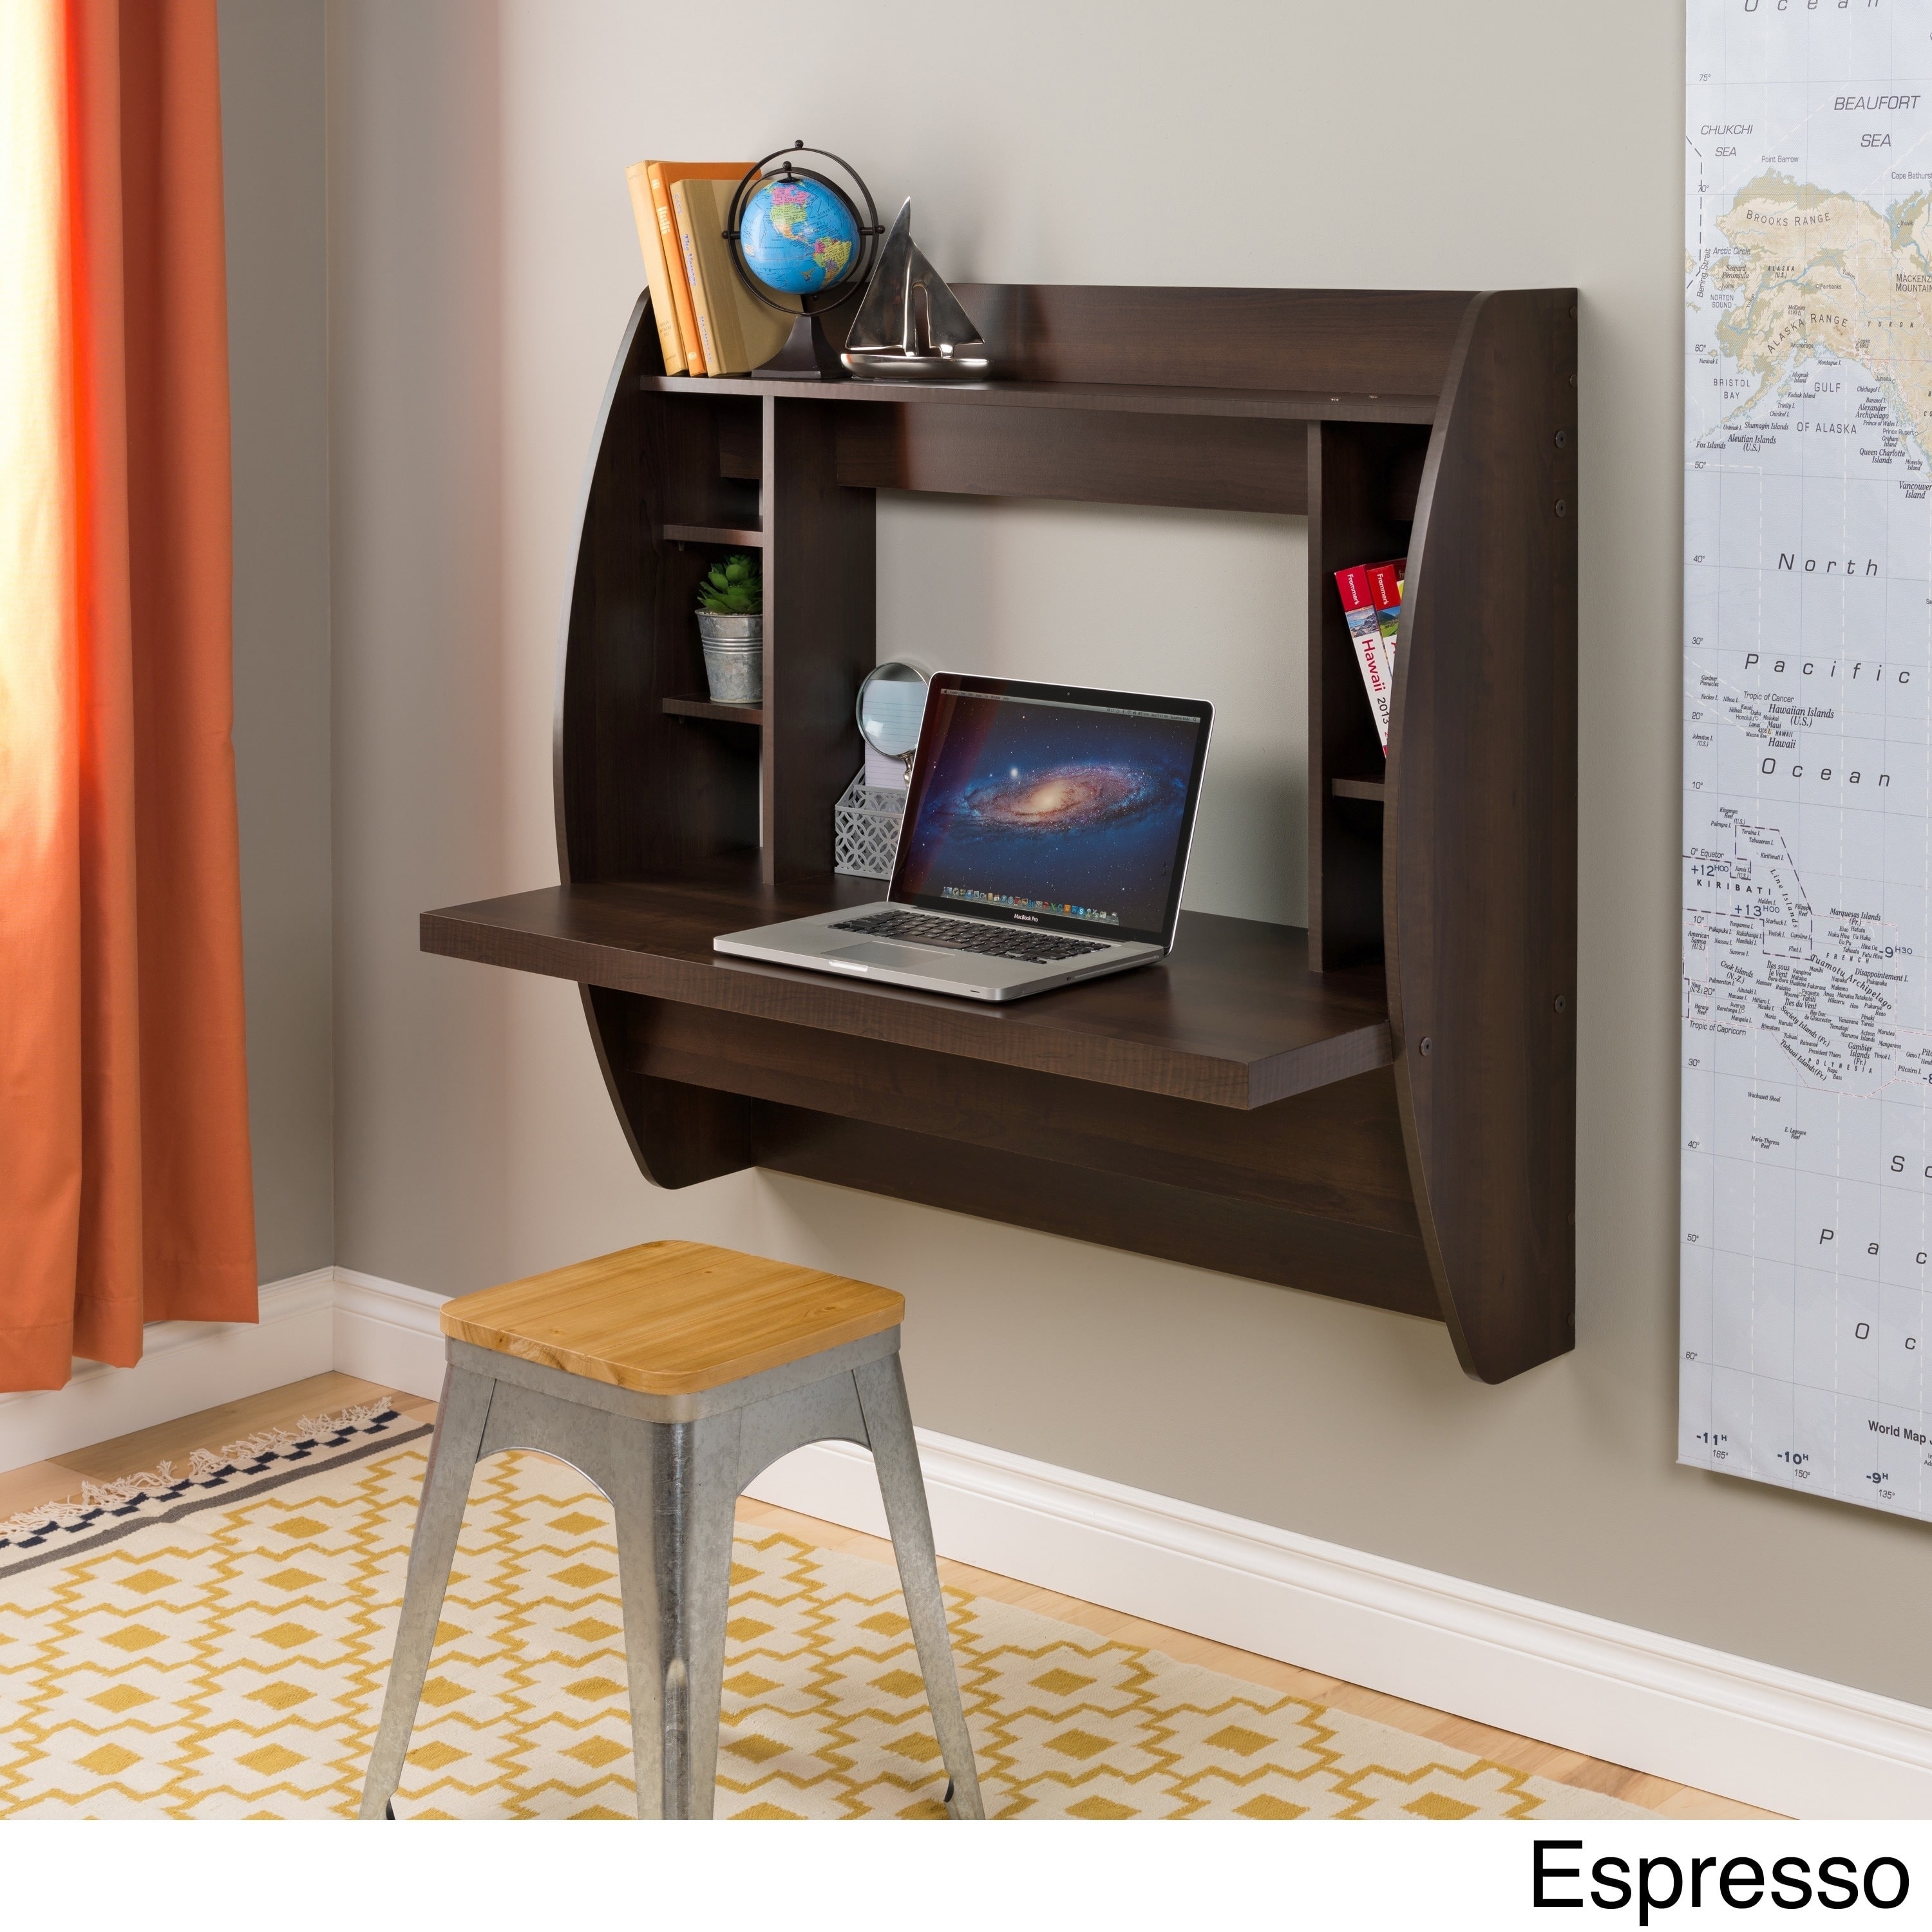 Desks Buy Wood, Glass and Metal Home Office Desks